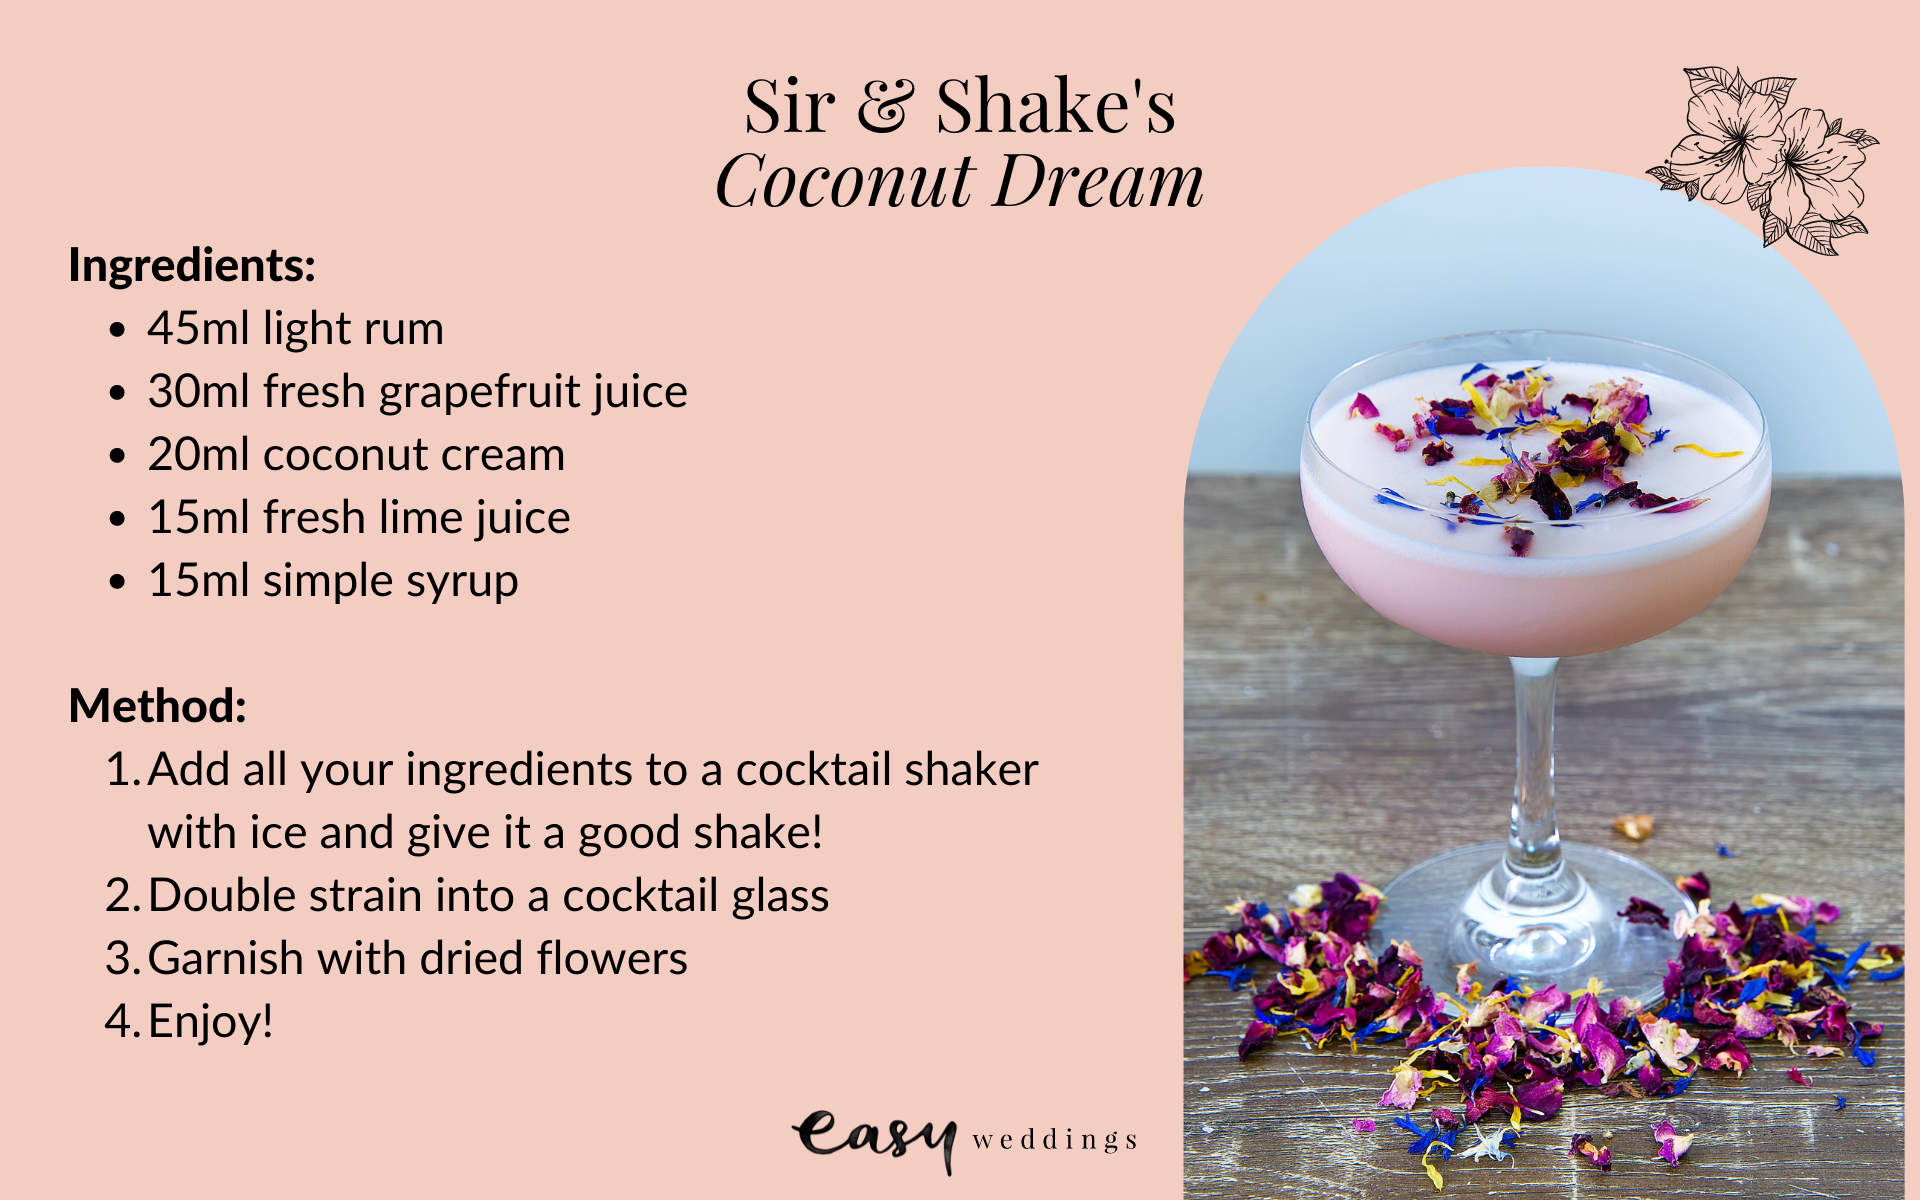 Sir & Shake Festive Cocktail Recipes